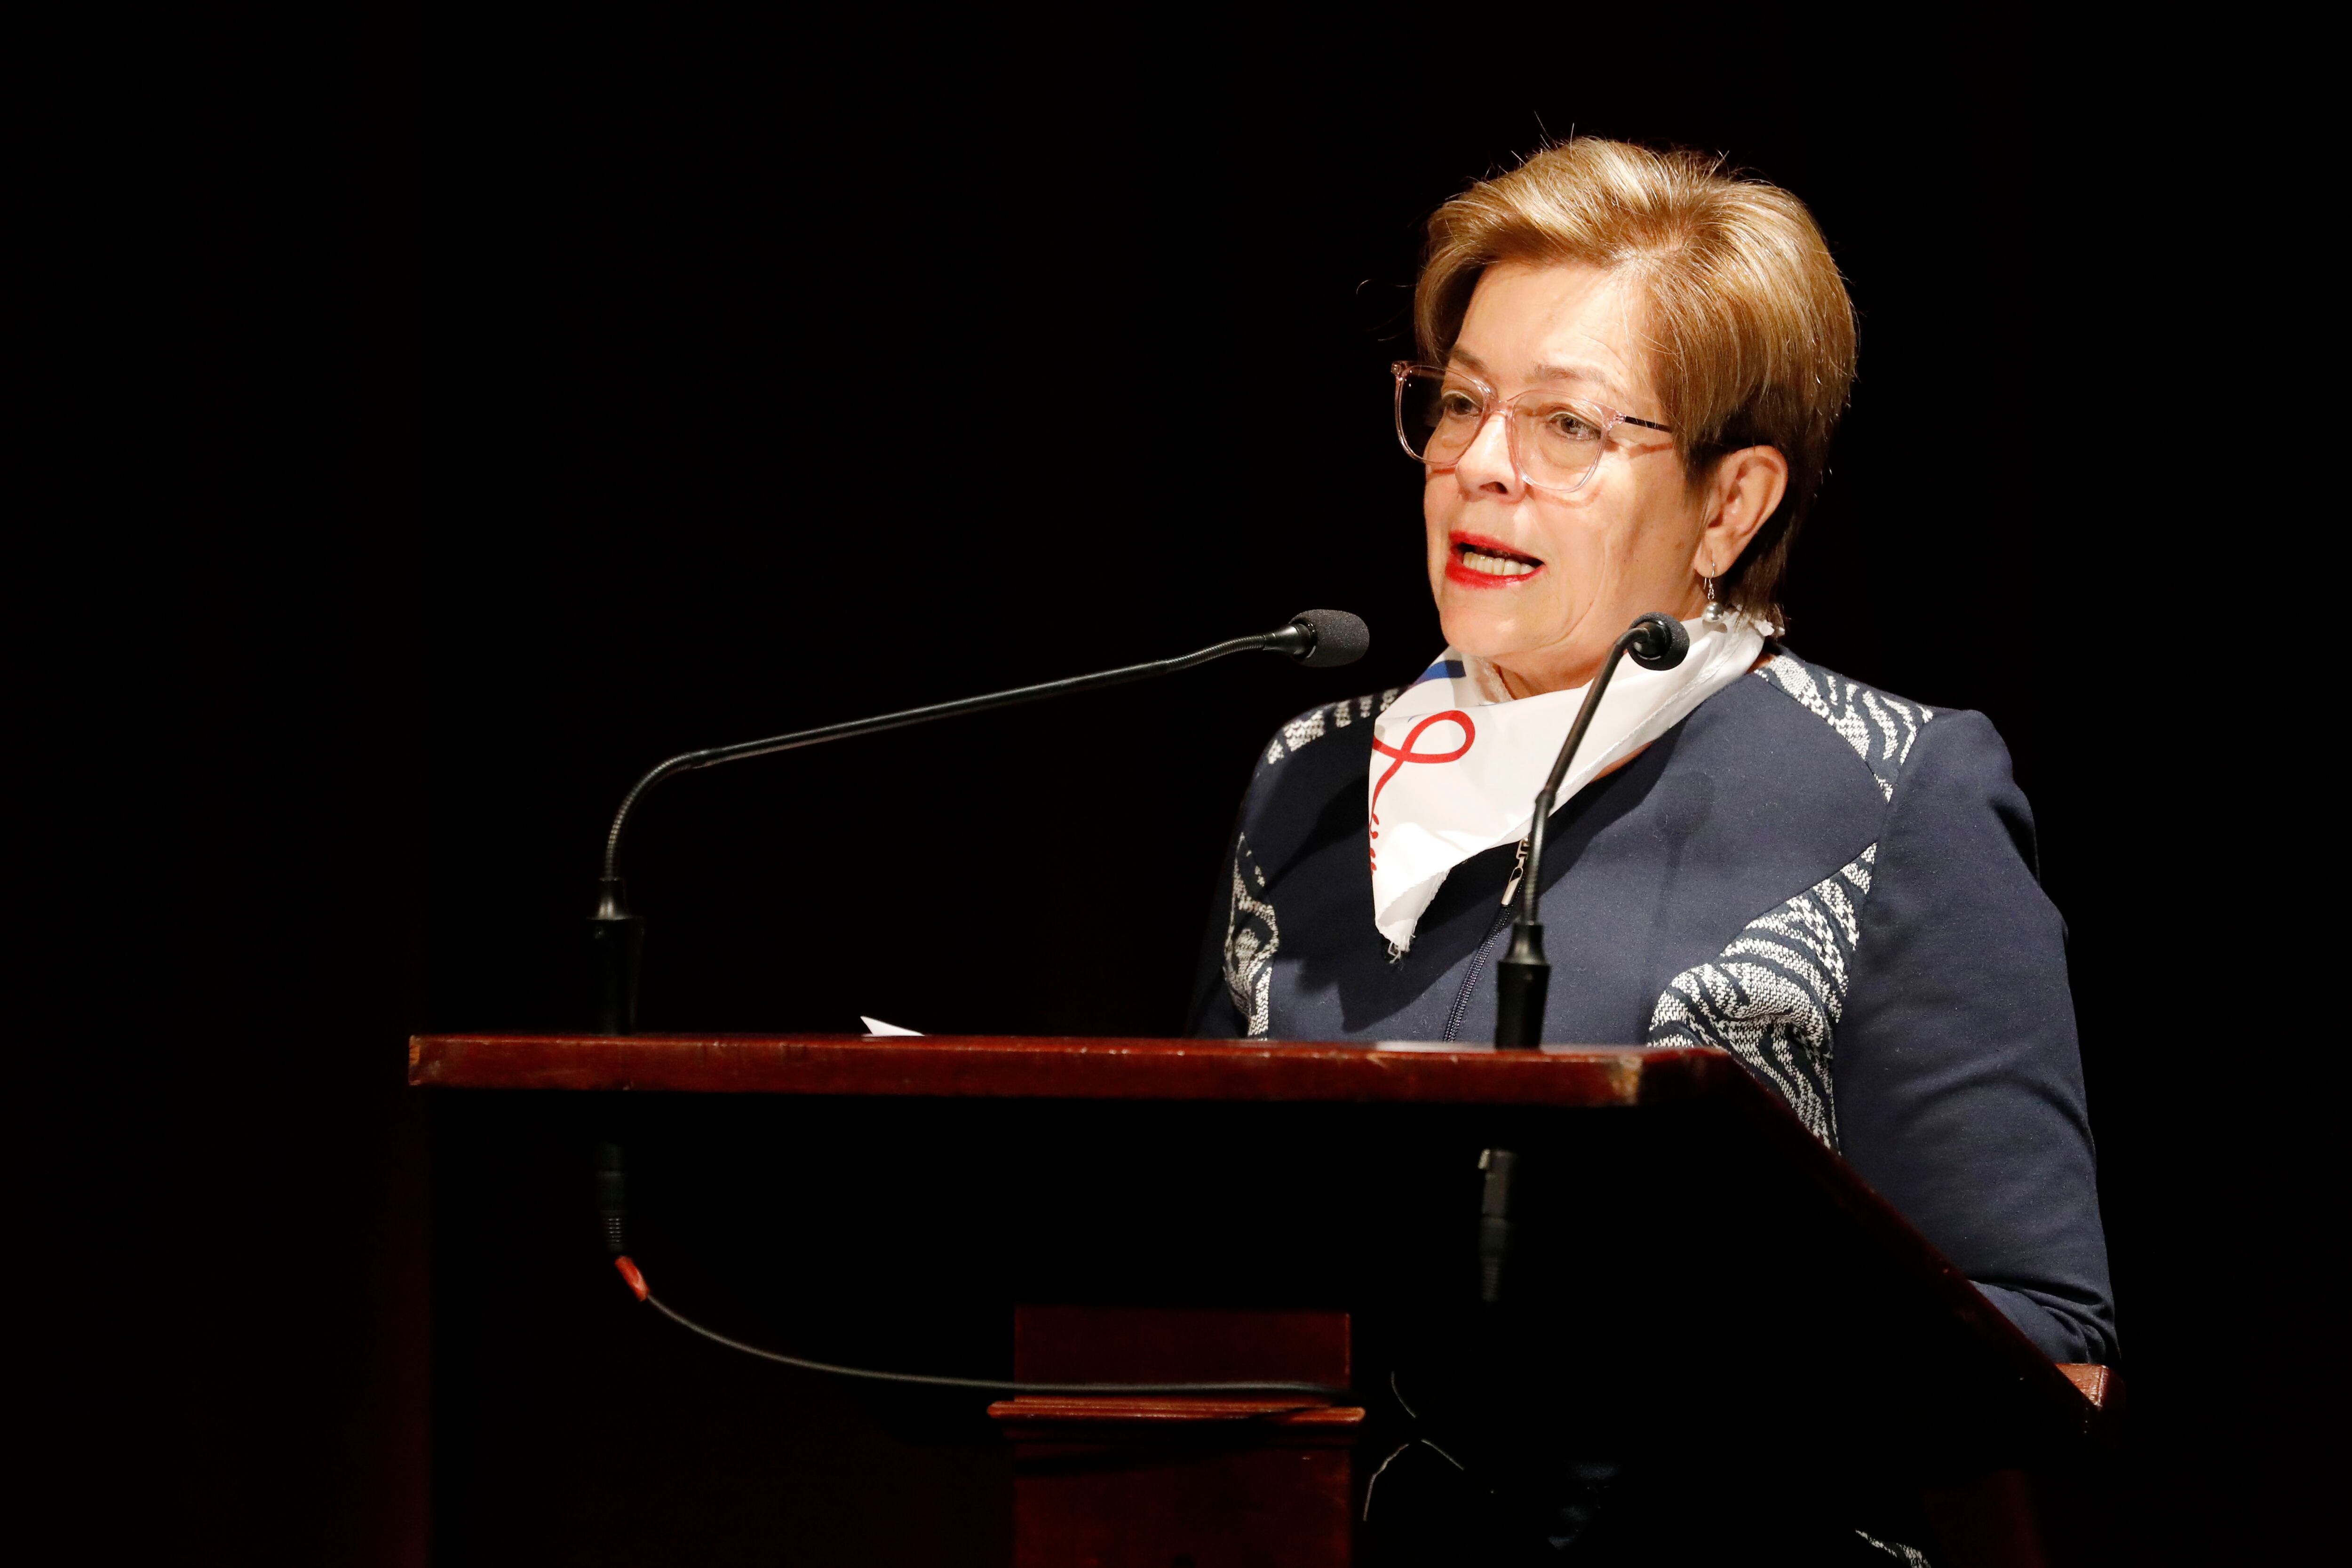 La ministra del Trabajo Gloria Inés Ramírez destacó la importancia del convenio como una herramienta para abordar la diversidad de género - crédito Carlos Ortega/EFE
